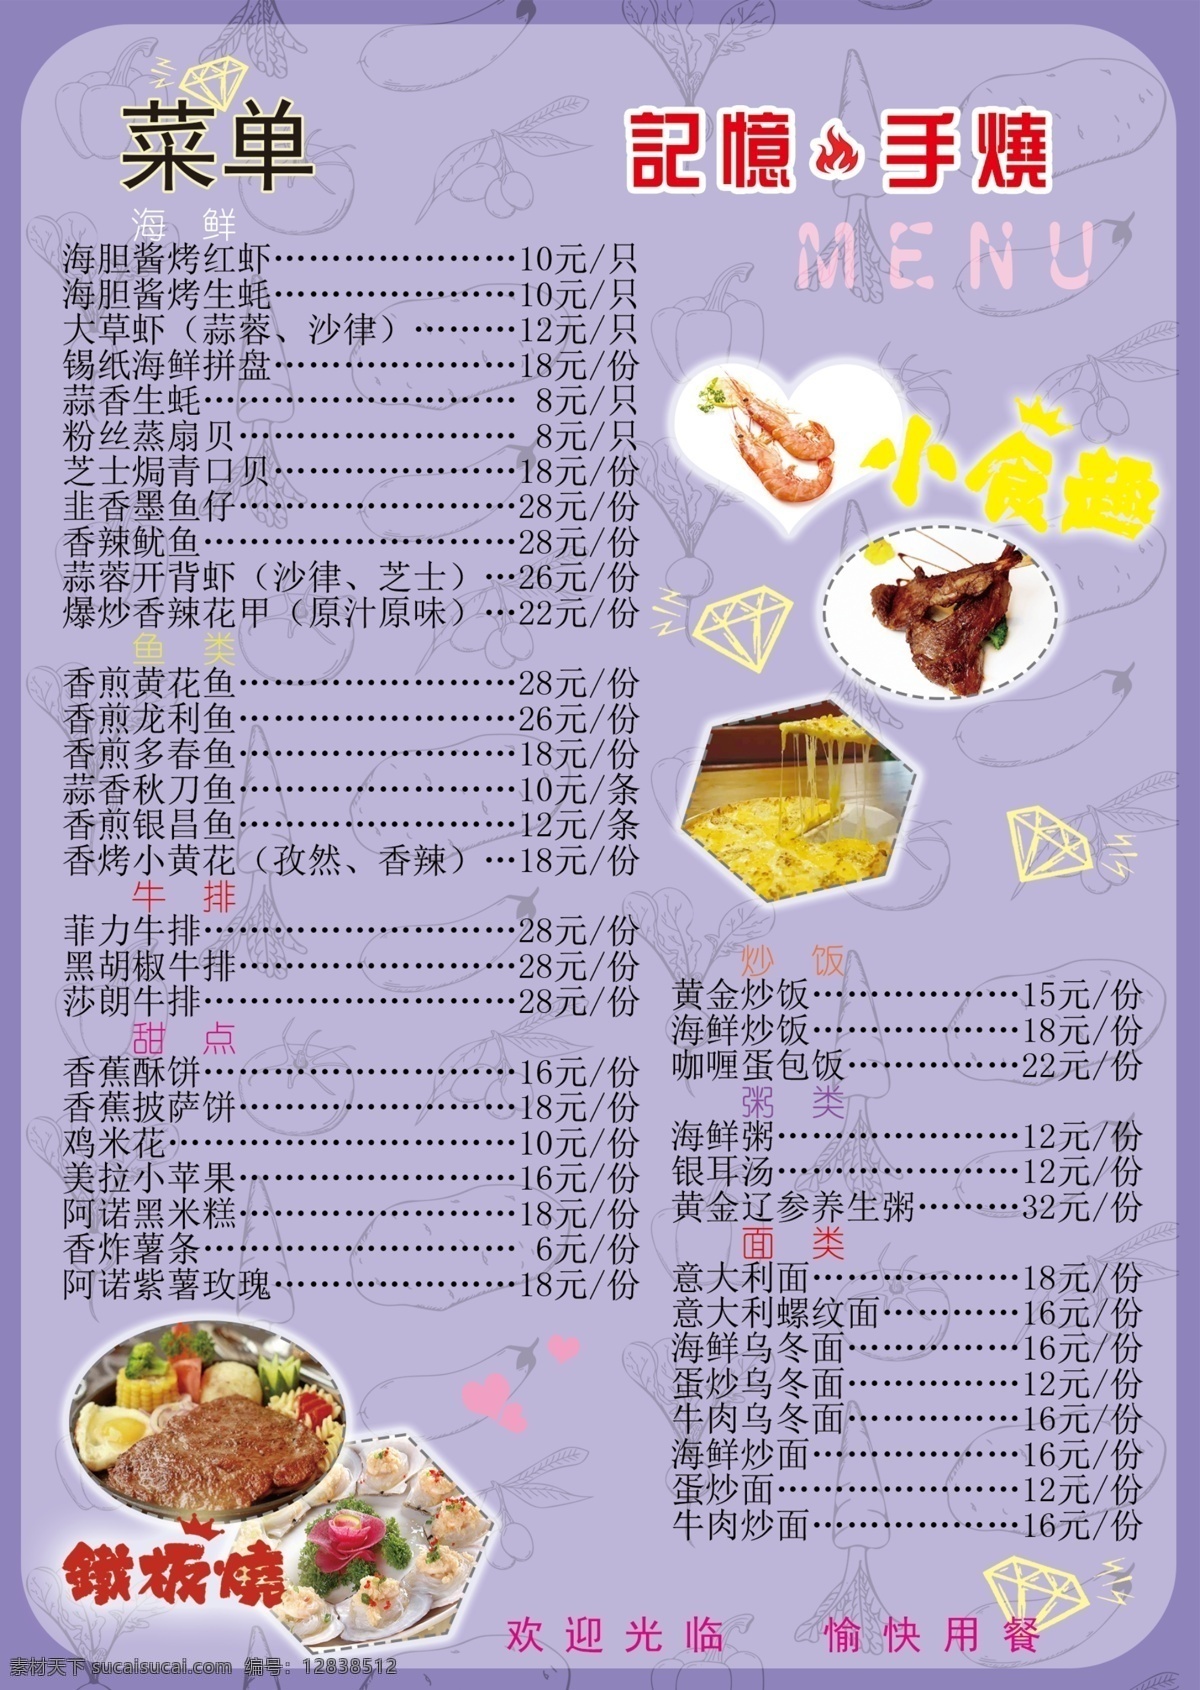 菜单 菜谱 蓝色 紫色 背景 模板 蓝色紫色 模板2 宣传页